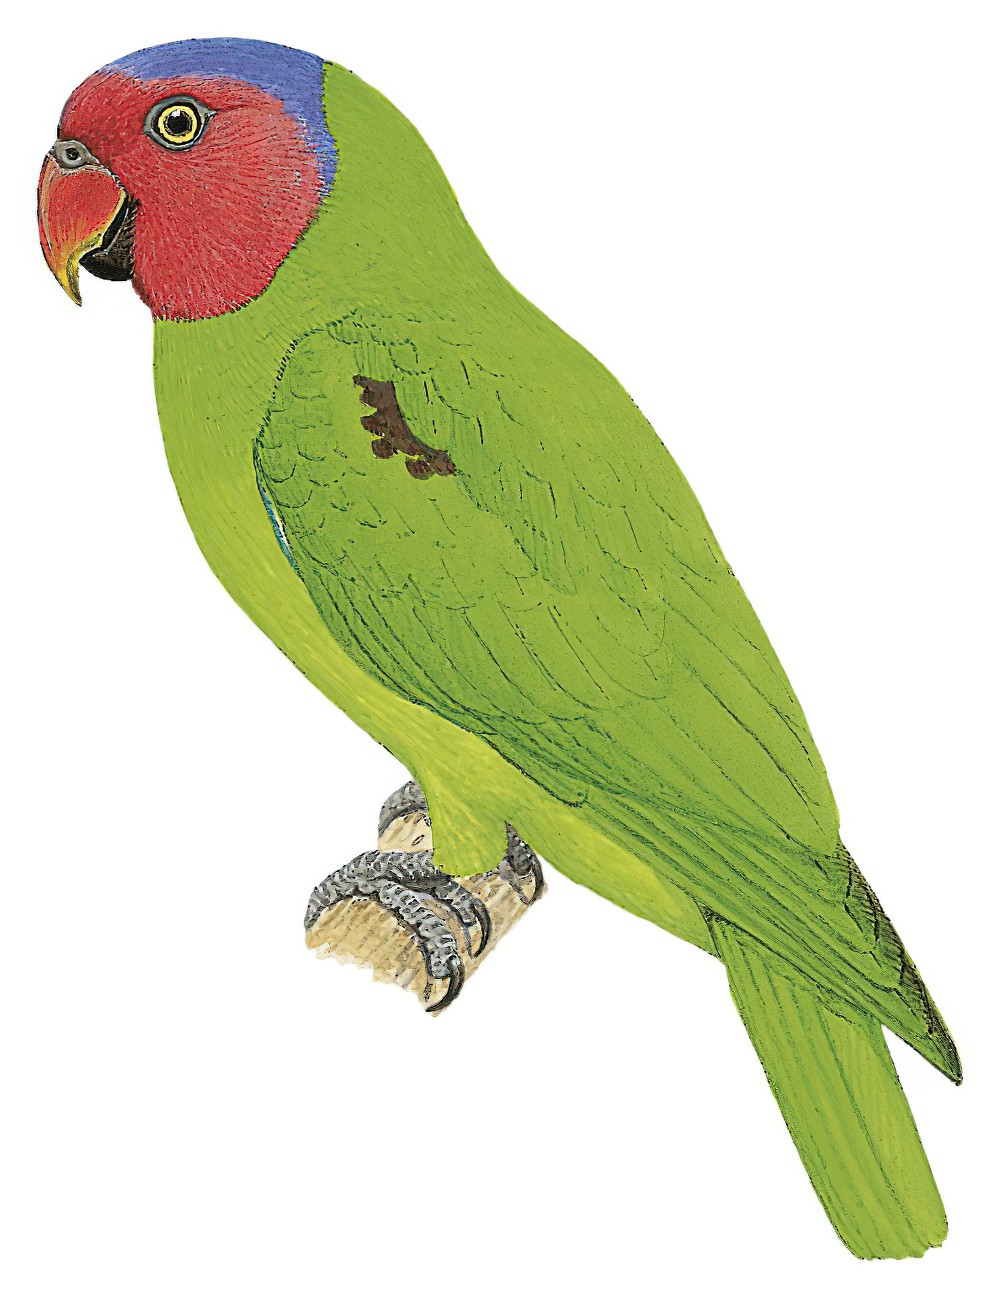 Red-cheeked Parrot / Geoffroyus geoffroyi